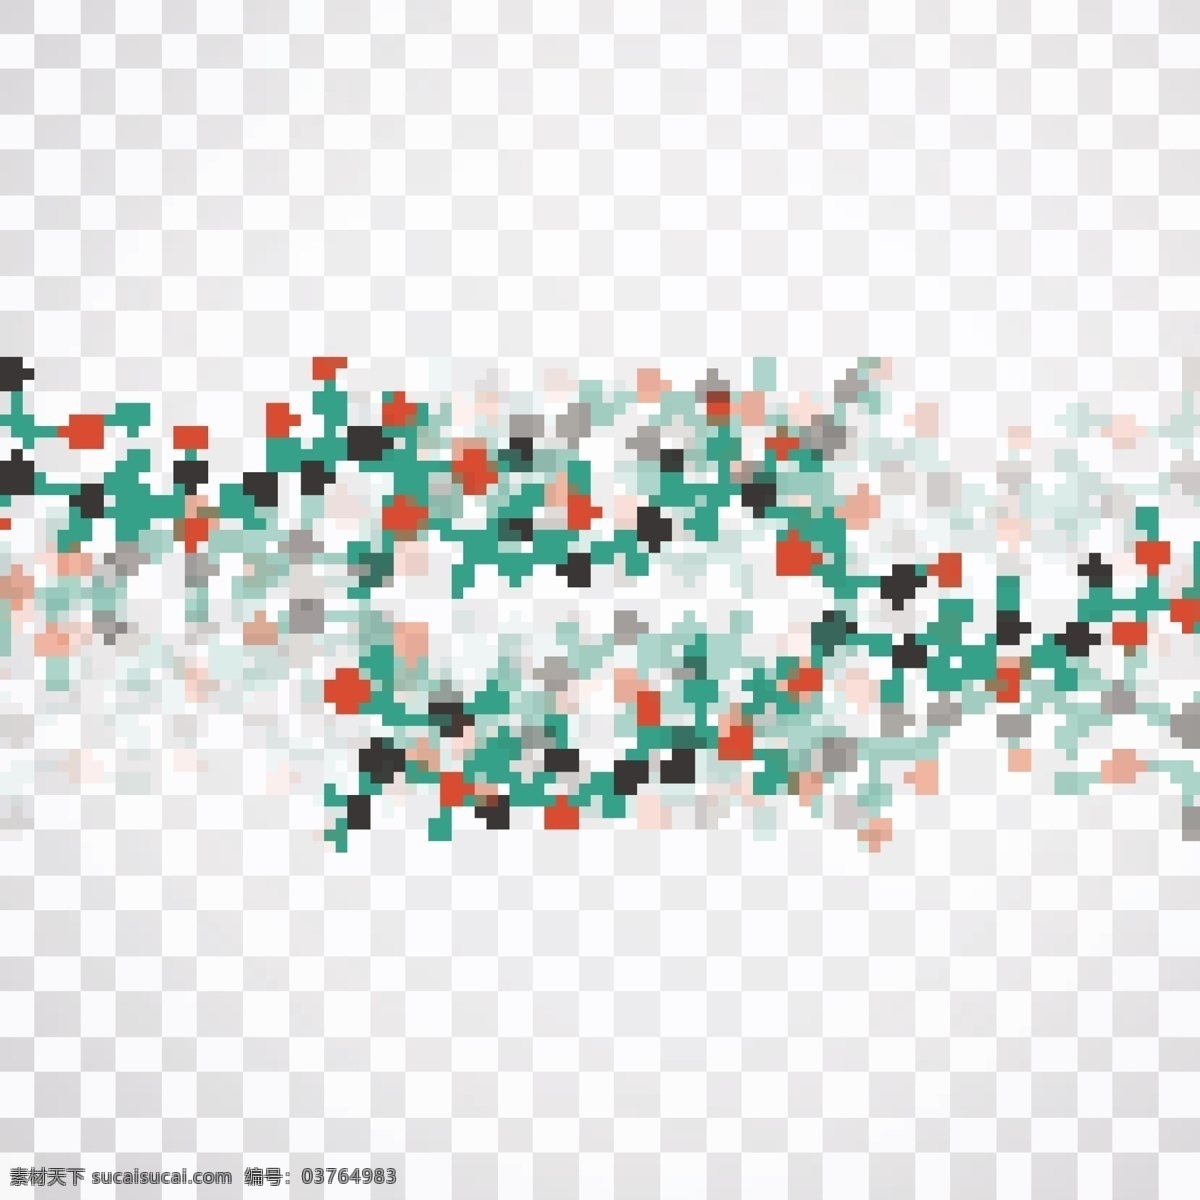 现代 分子生物学 背景 抽象背景 技术 计算机 几何 线条 技术背景 点 未来 装饰 电路 网络 未来派 抽象的形状 芯片